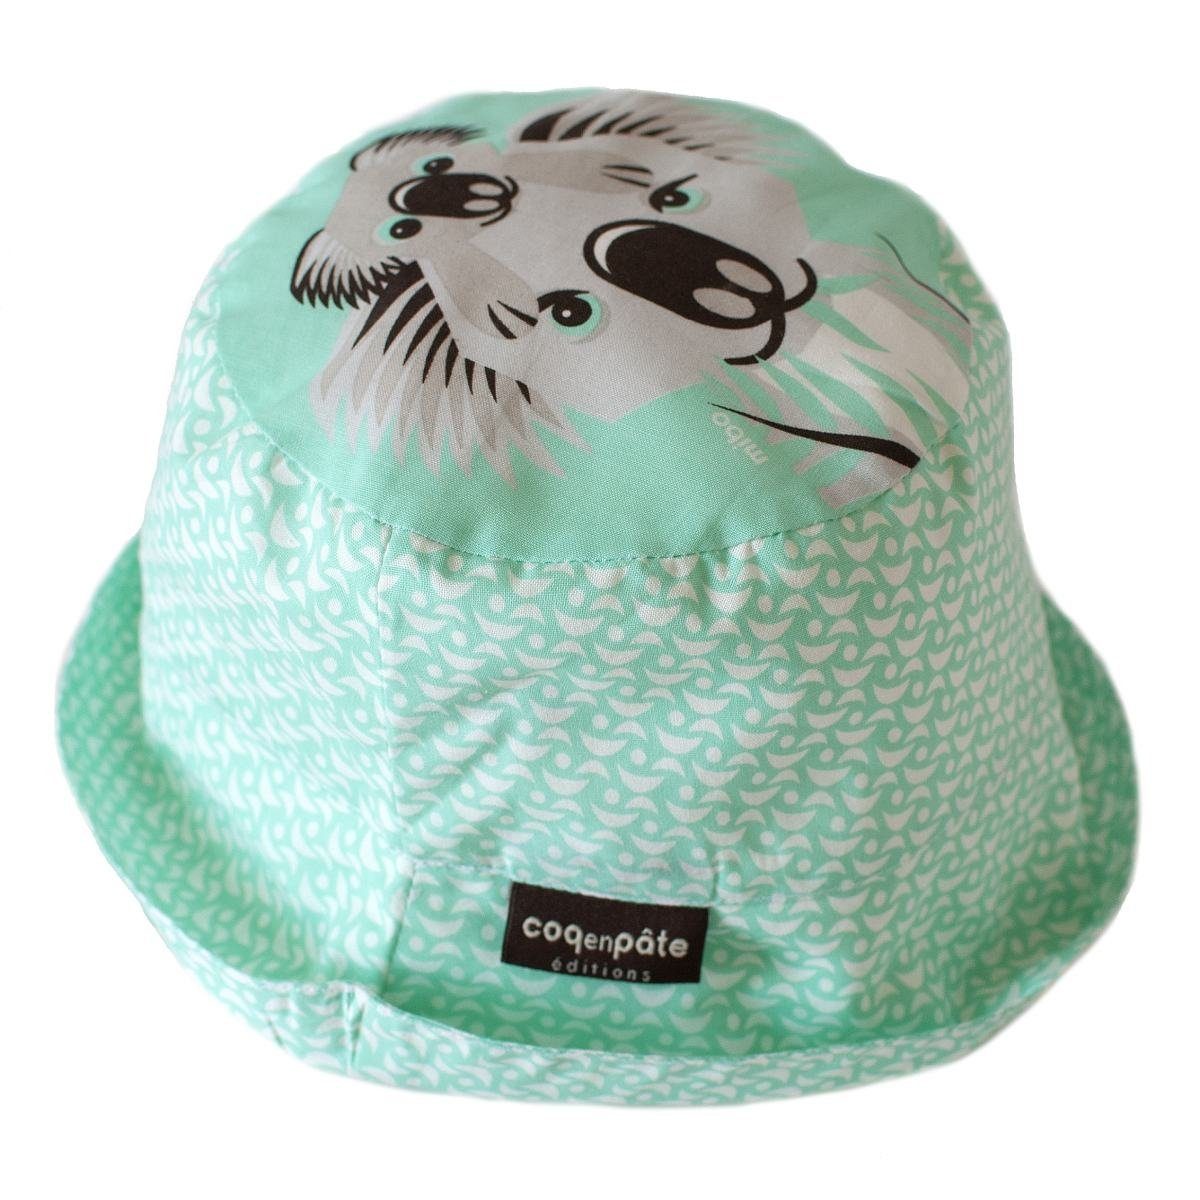 COQ EN PATE Sonnenhut Farbenfroher Kinder-Hut mit Tiermotiven und Mustern Sonnenschutz Koala - Größe: M